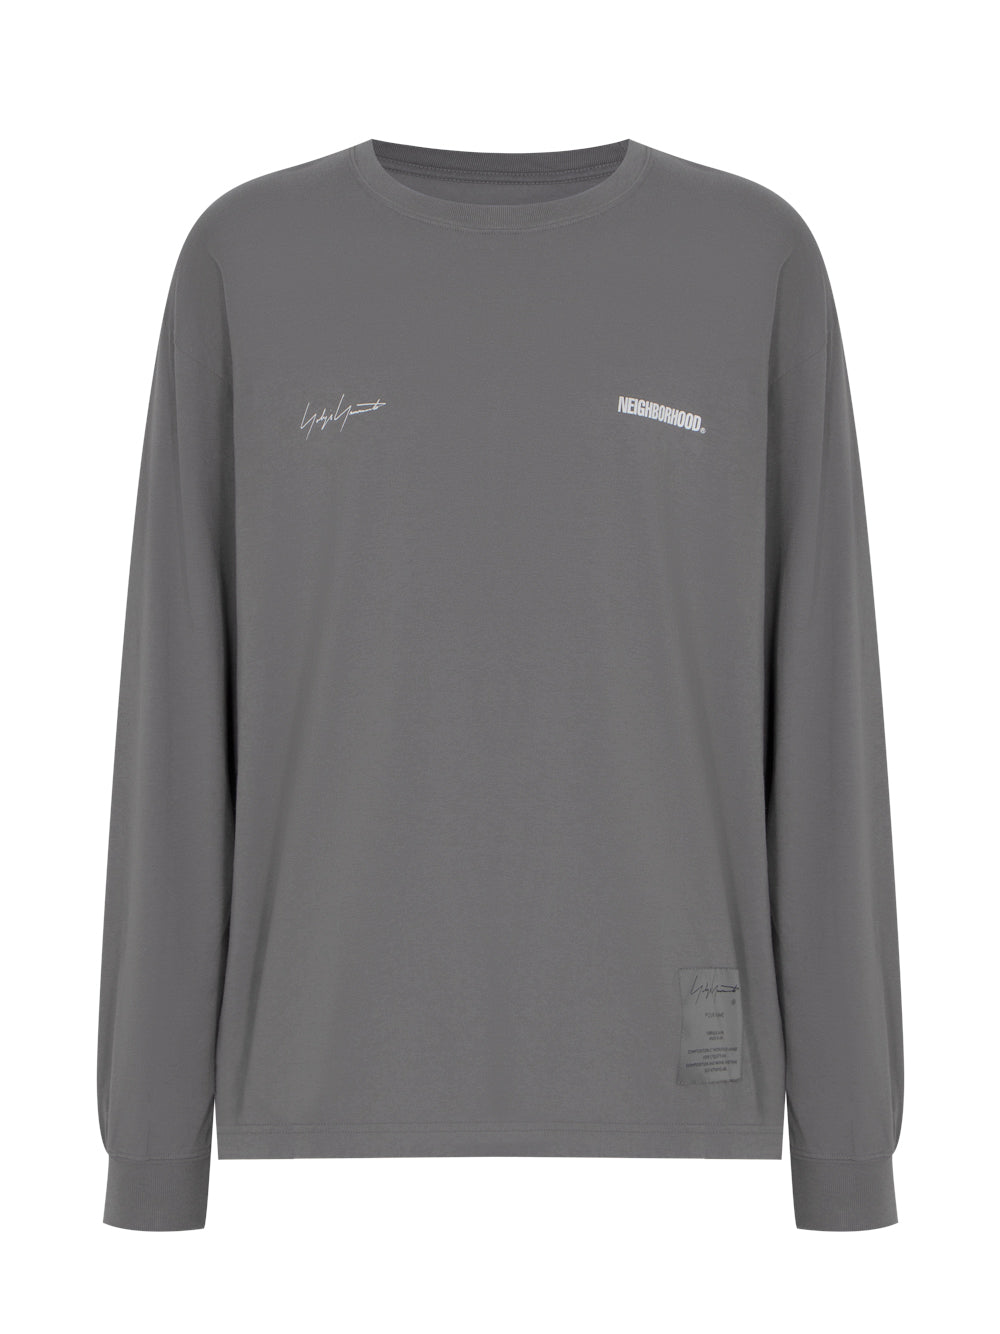 Yohji Yamamoto X NEIGHBORHOOD PT Long Sleeve Sweater (Grey)